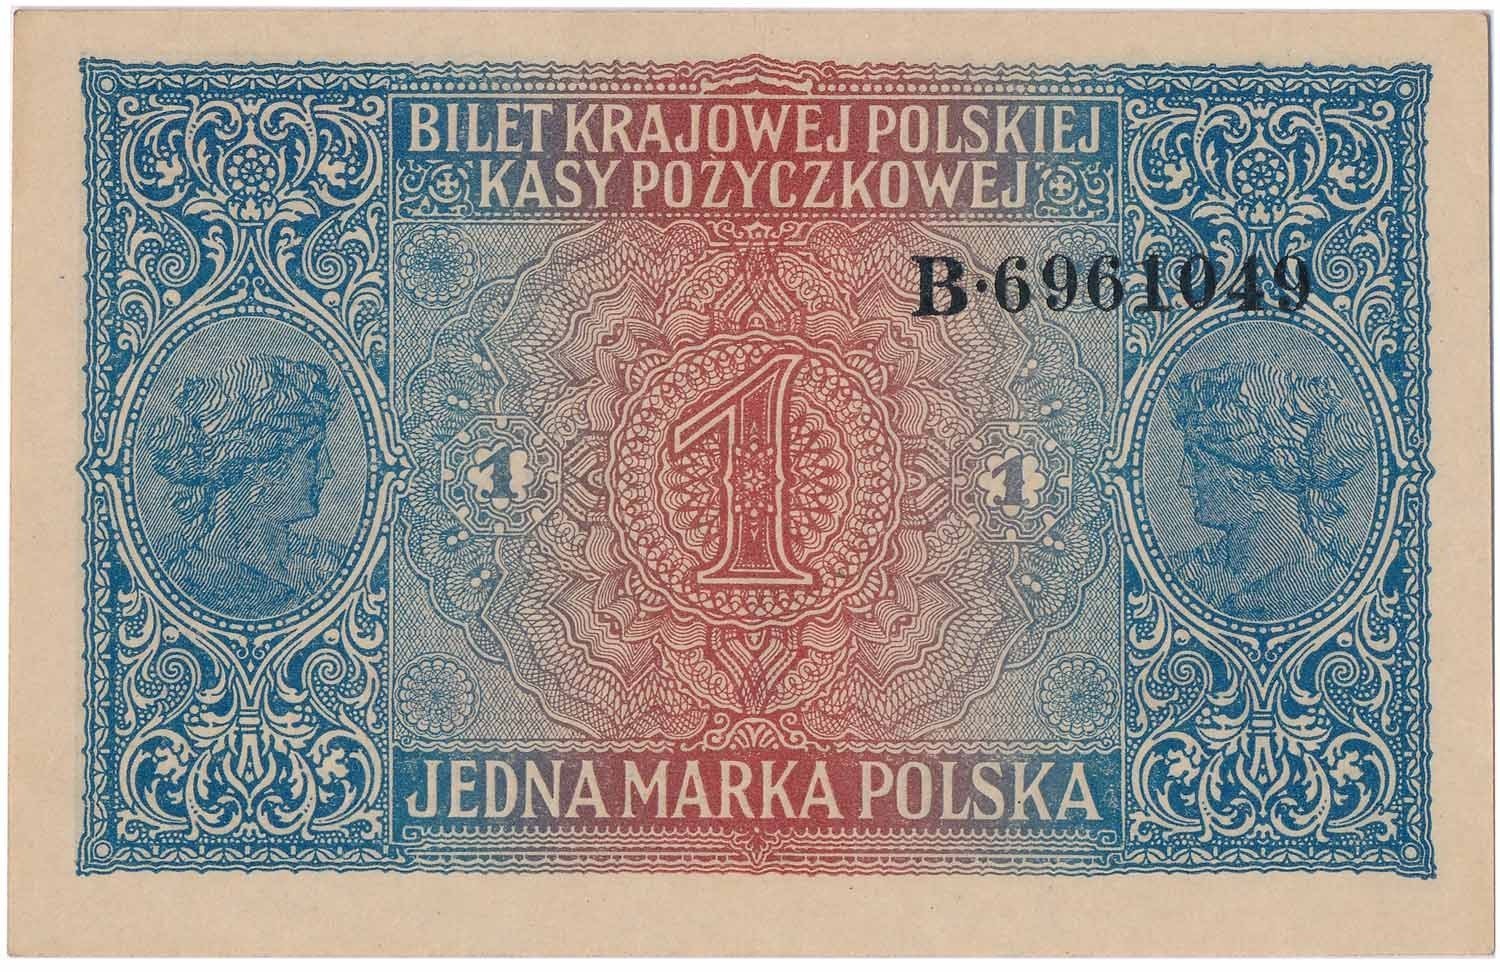 Okupacja niemiecka 1915-1918. Banknot. 1 marka polska 1916 ...jenerał... seria B PMG 64 EPQ